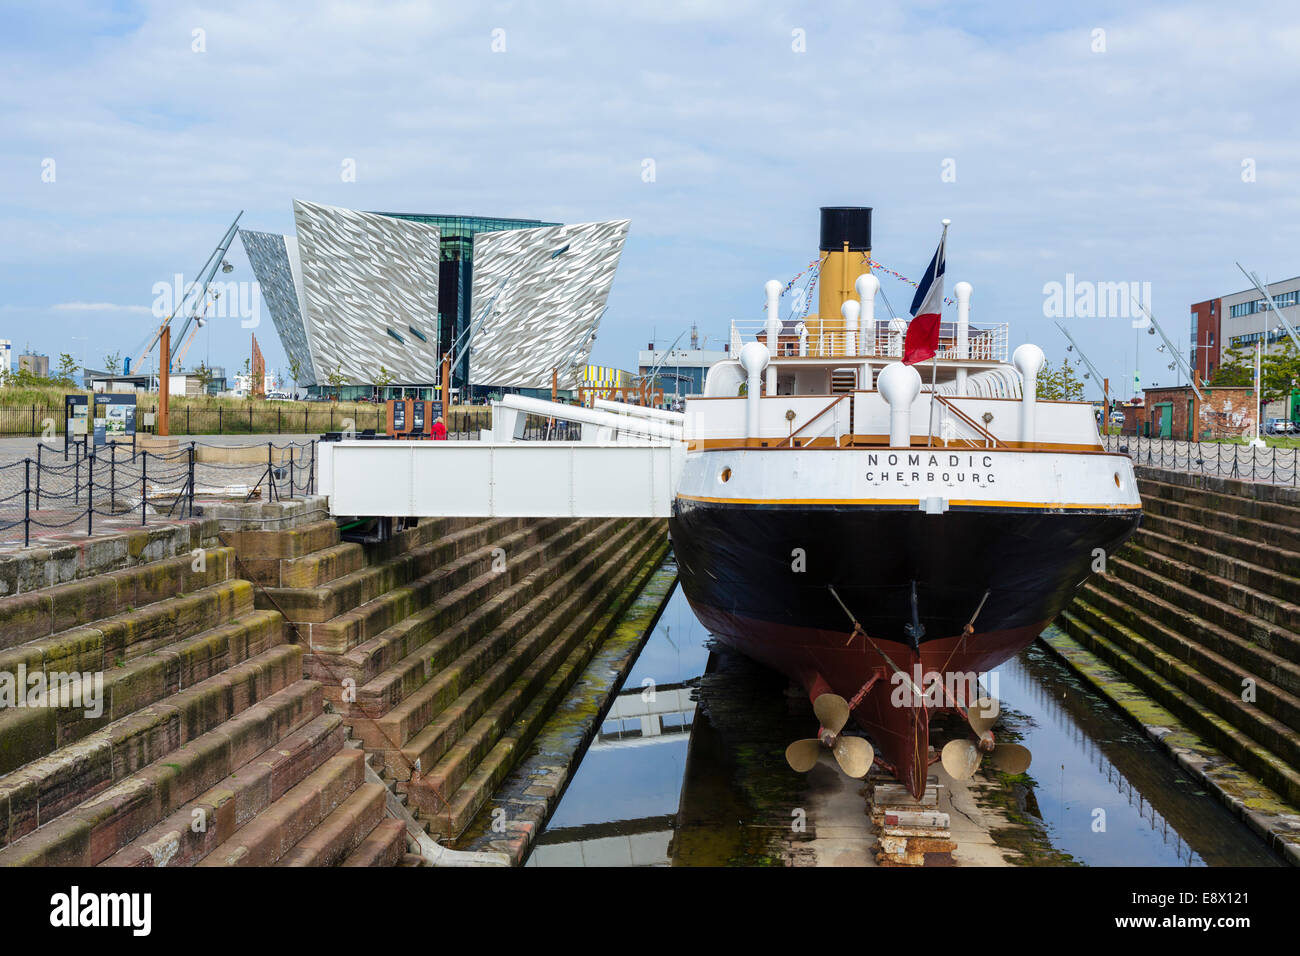 L'offre de navires à vapeur SS Nomadic avec Titanic Belfast museum derrière, Titanic Quarter, Belfast, Irlande du Nord, Royaume-Uni Banque D'Images